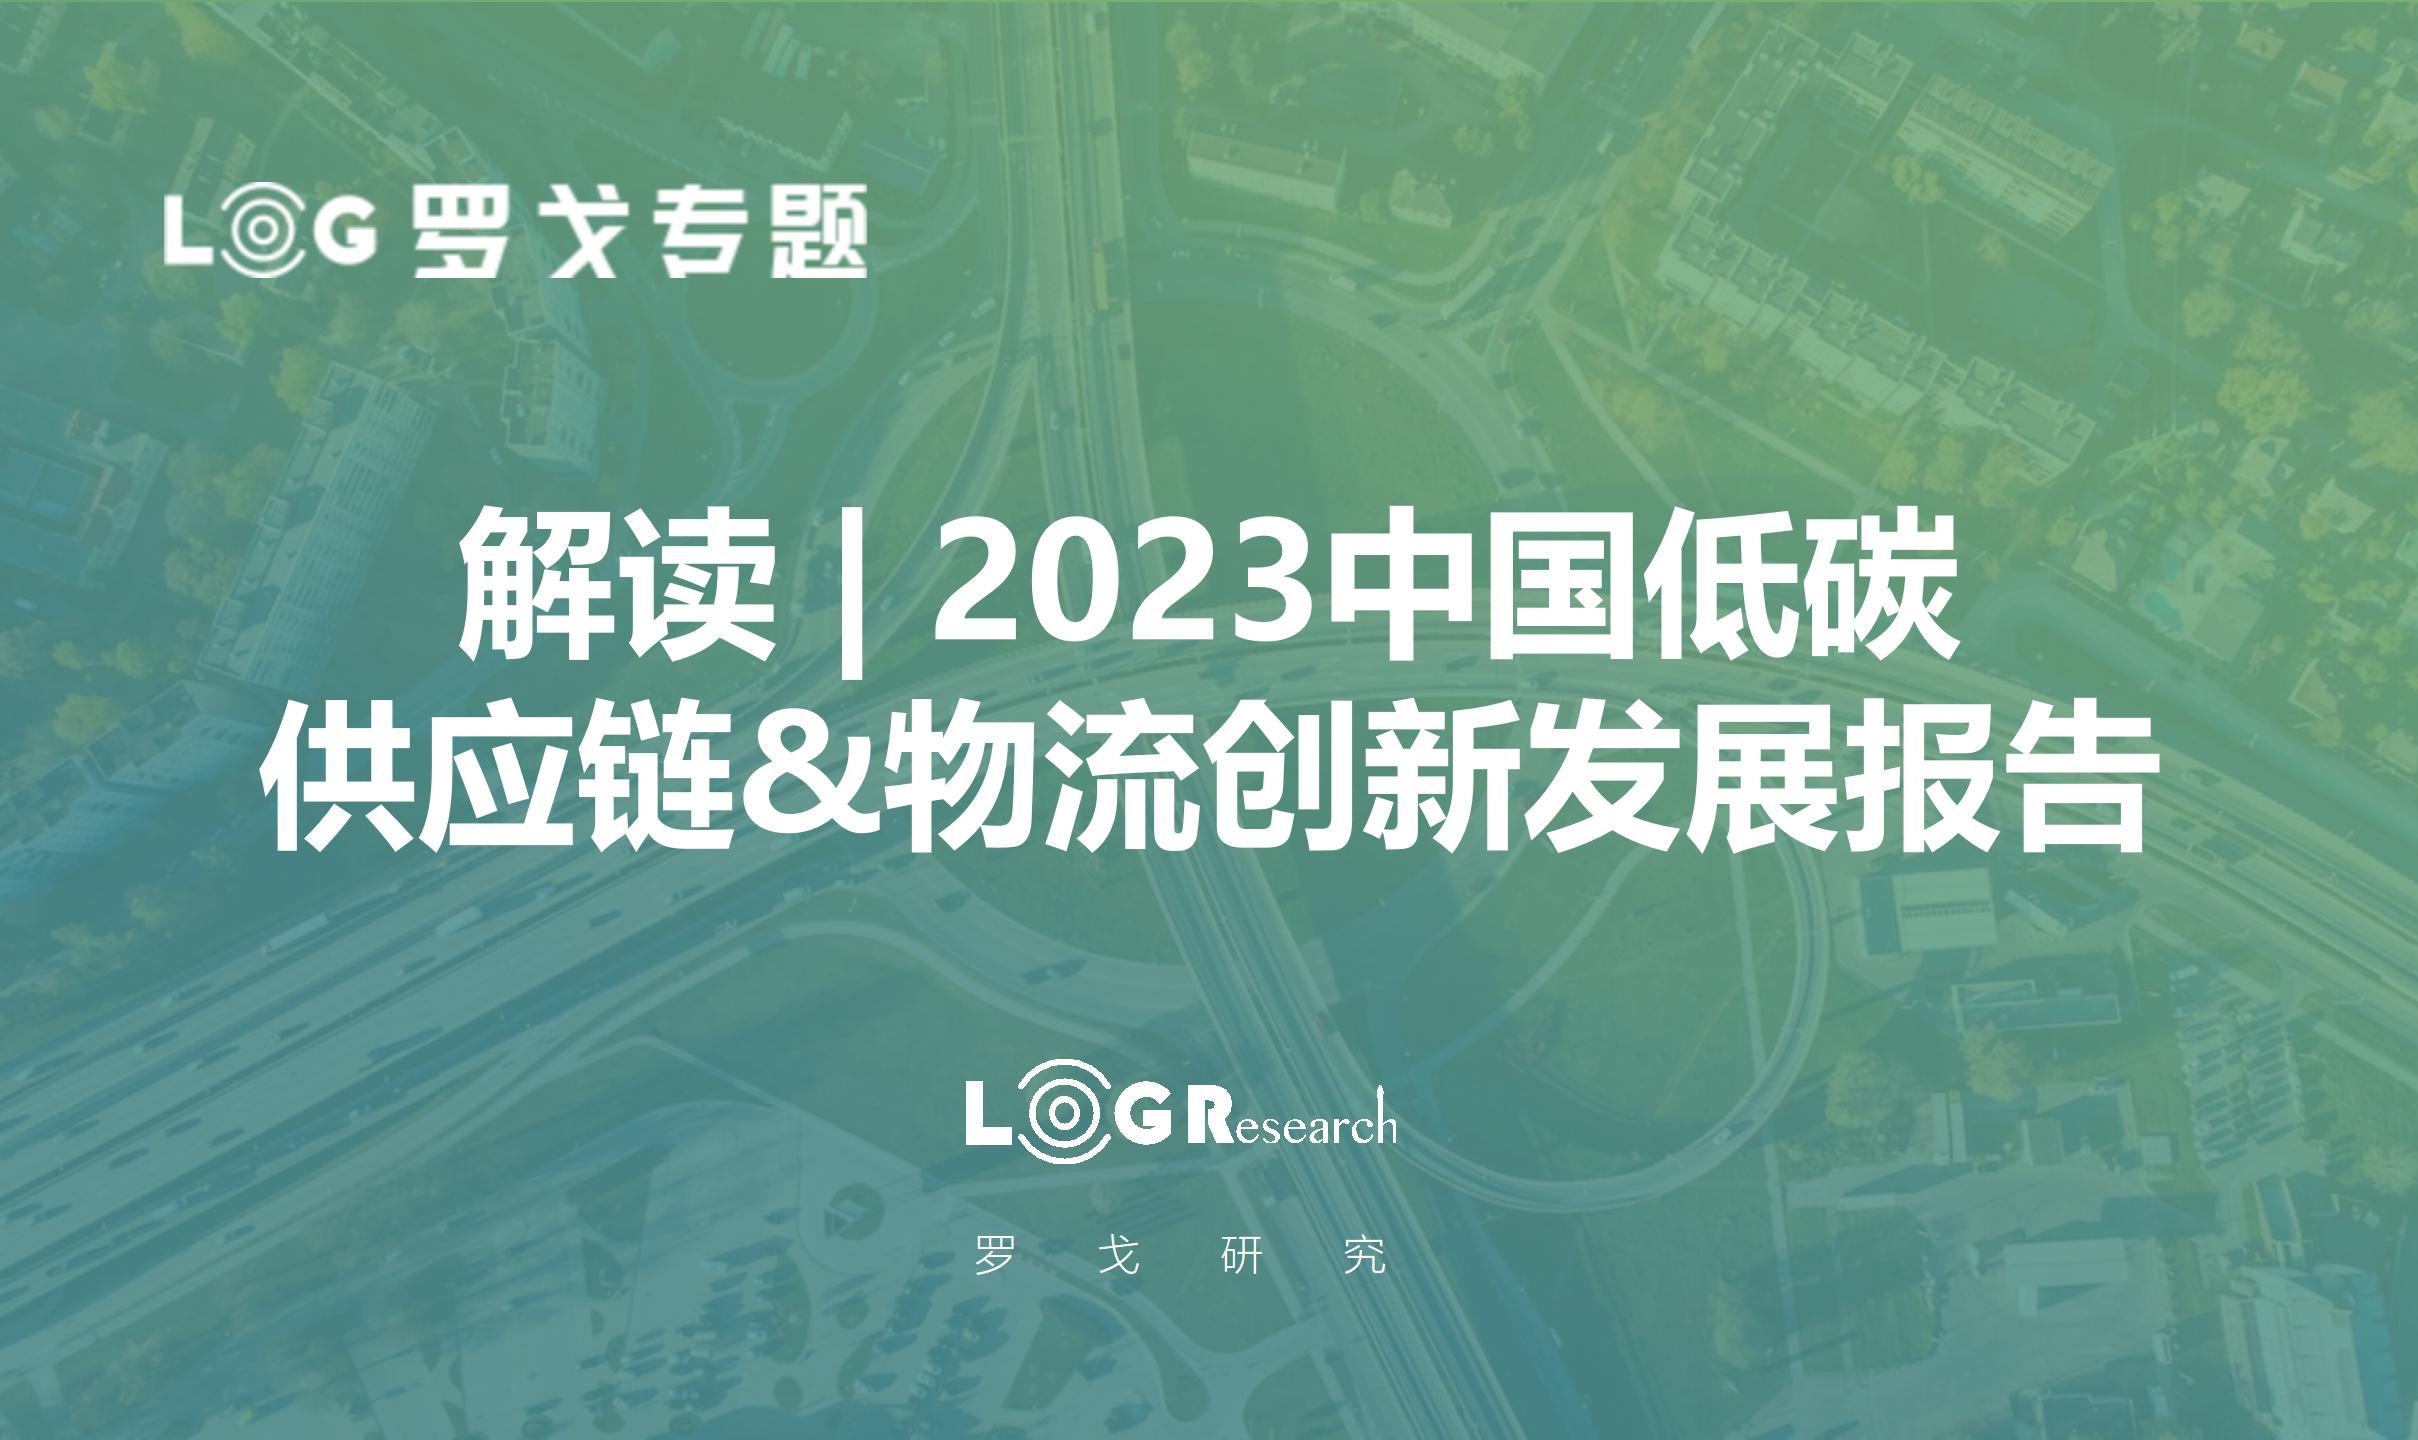 解读PPT | 2023中国低碳供应链&物流创新发展报告